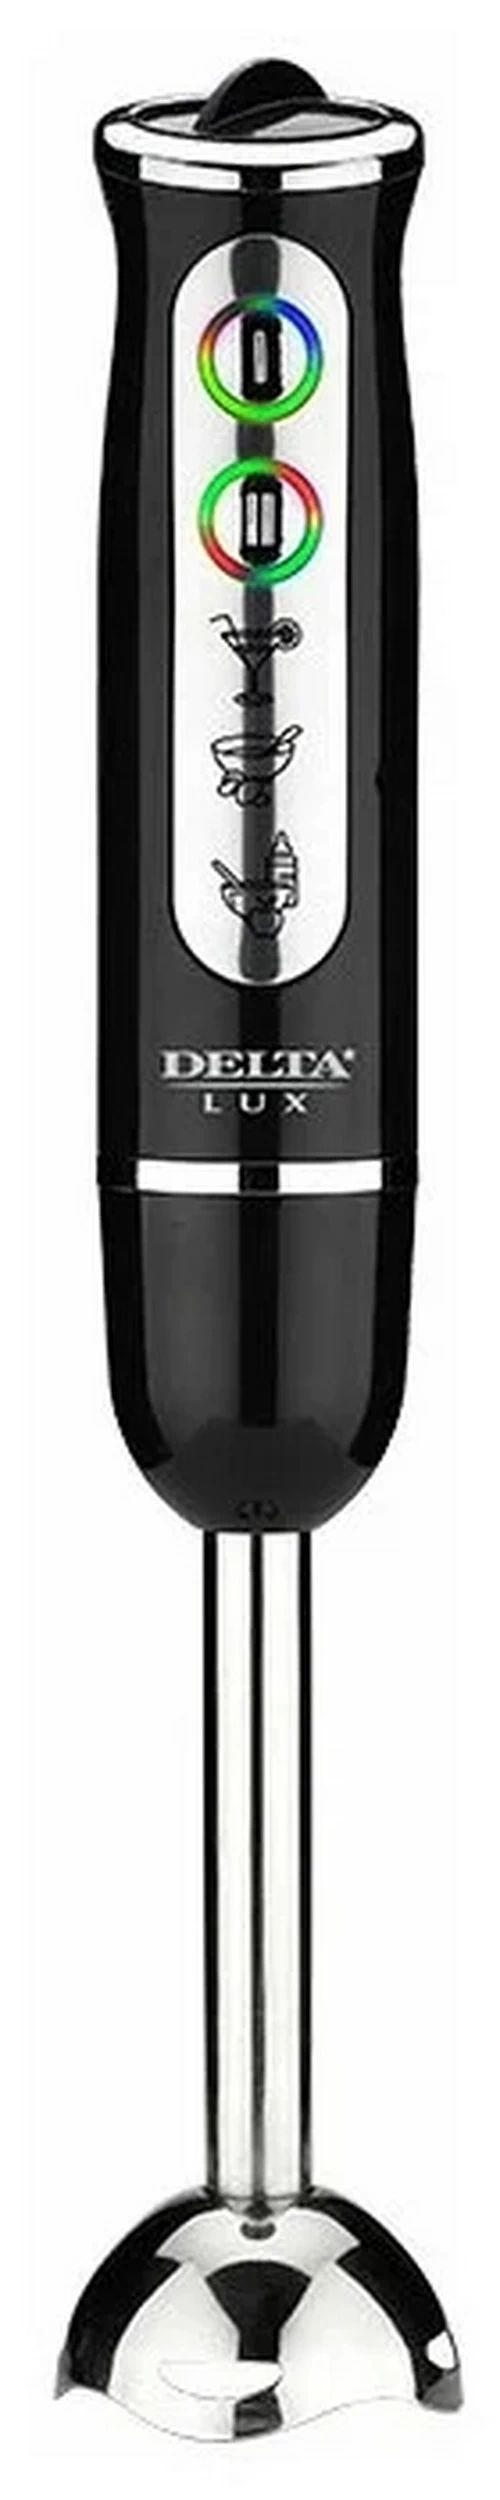 Погружной блендер Delta Lux DL-7039 черный погружной блендер delta lux de 7003b